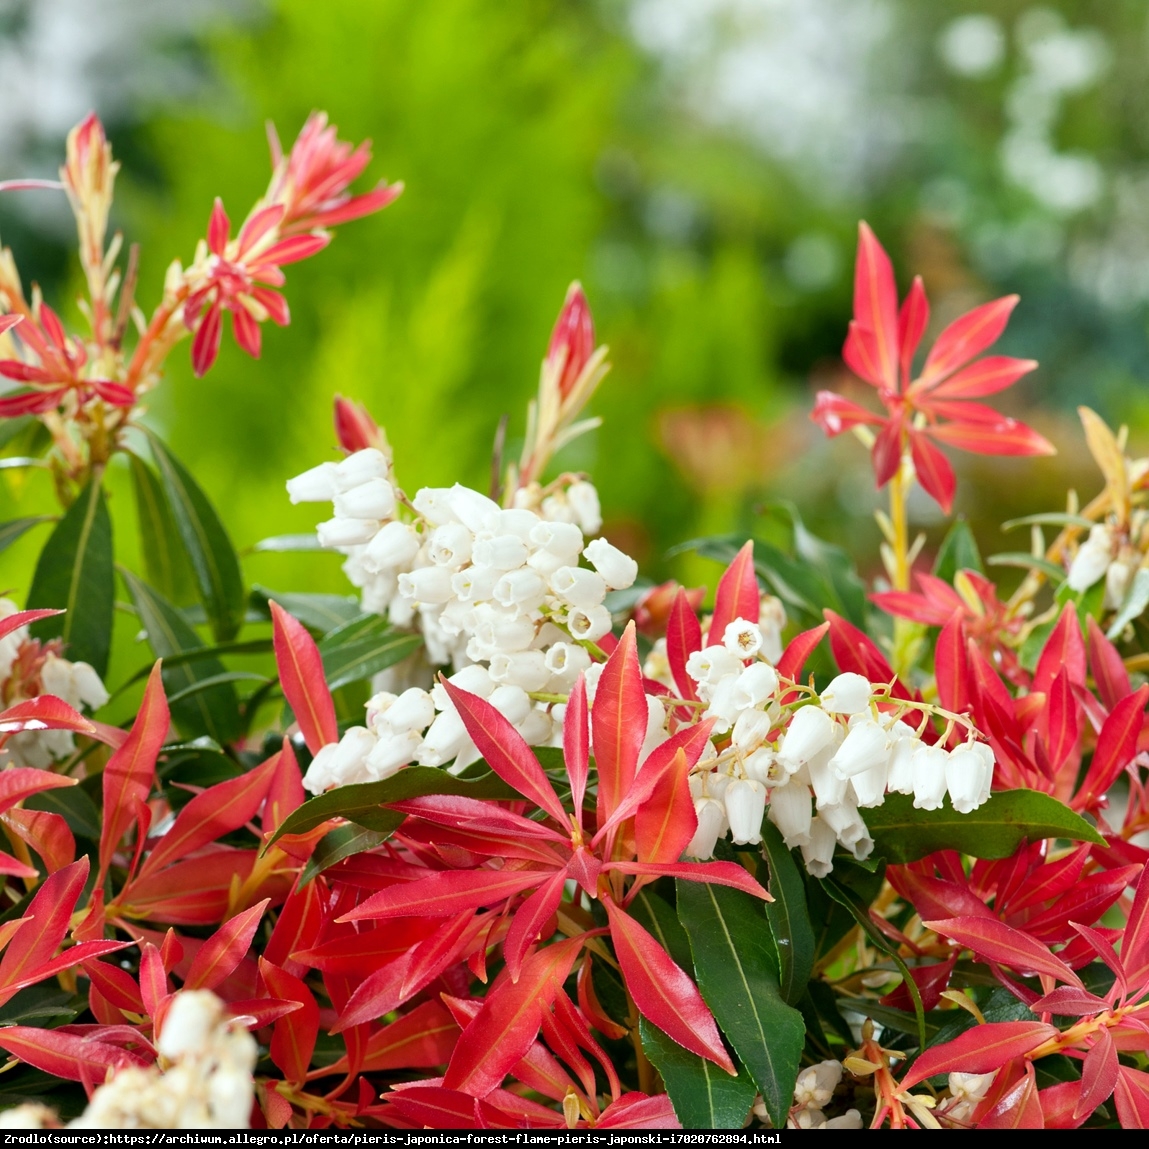 pieris japonica flame forest plant shrub evergreen 9cm garden pot pots pack enlarge click flowers